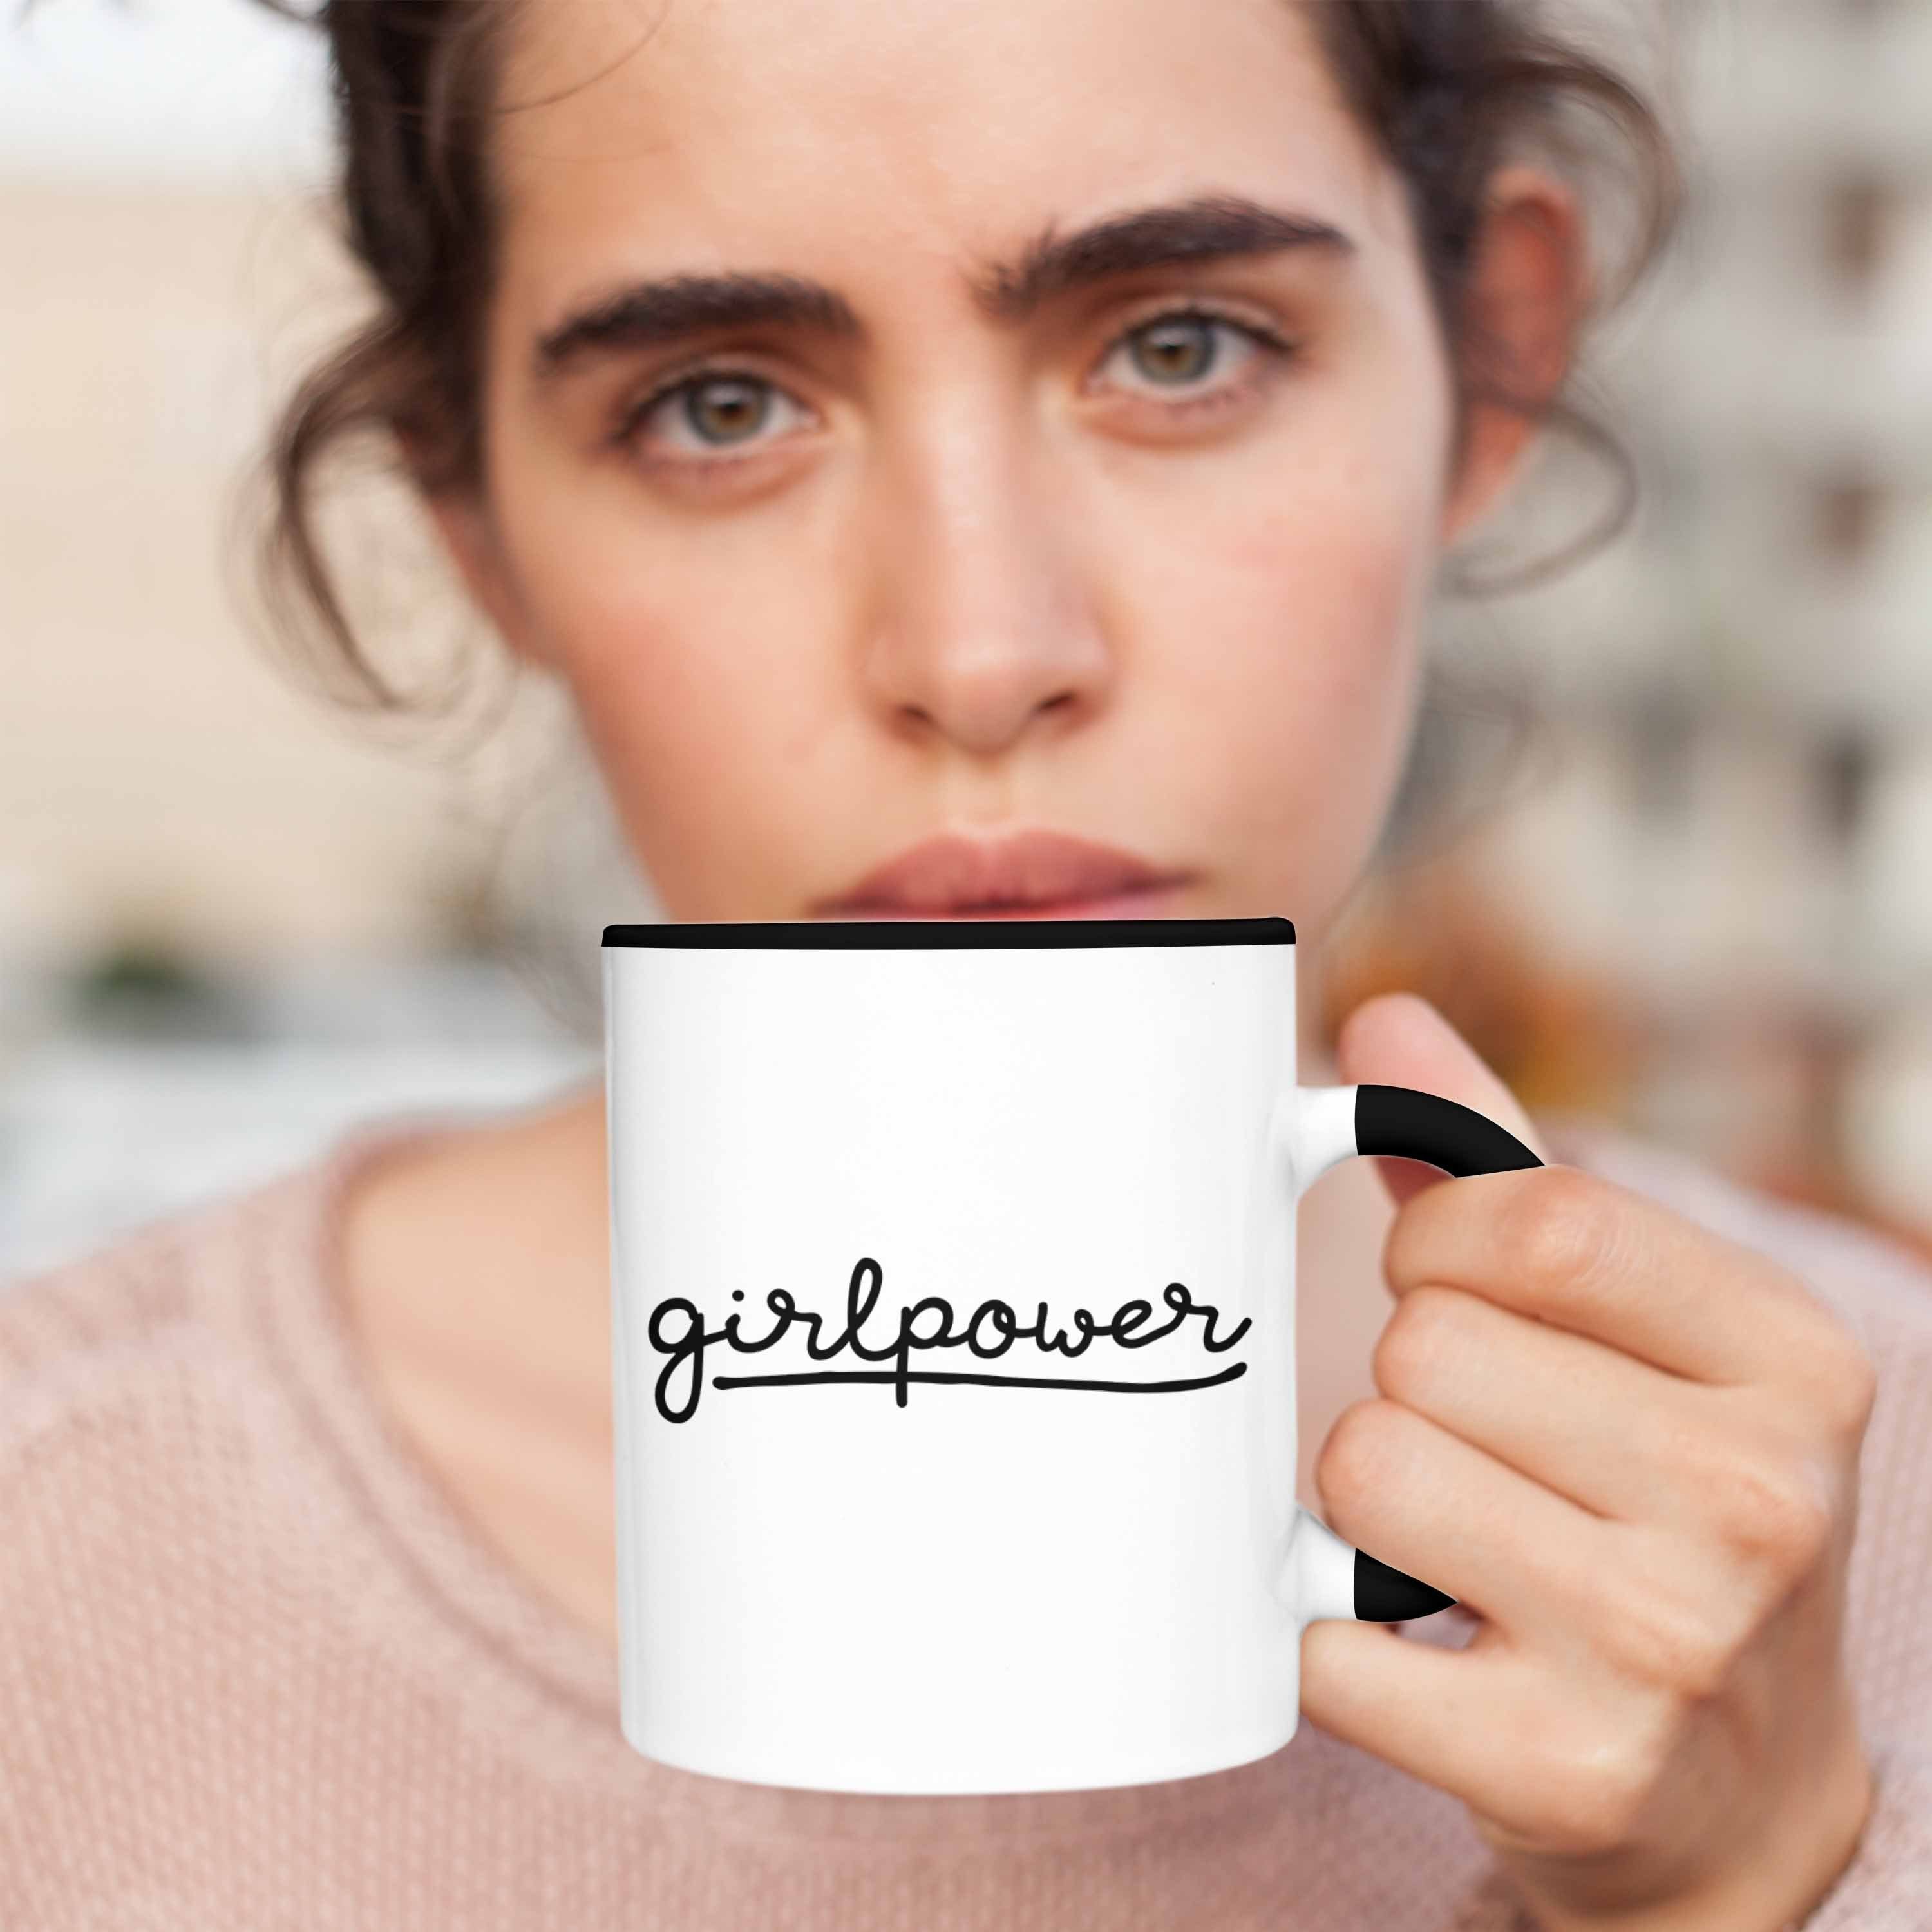 Trendation Mädchen für Schwarz Frauen Geschenk Kaffeetasse - Trendation Tasse Girlpower Tasse